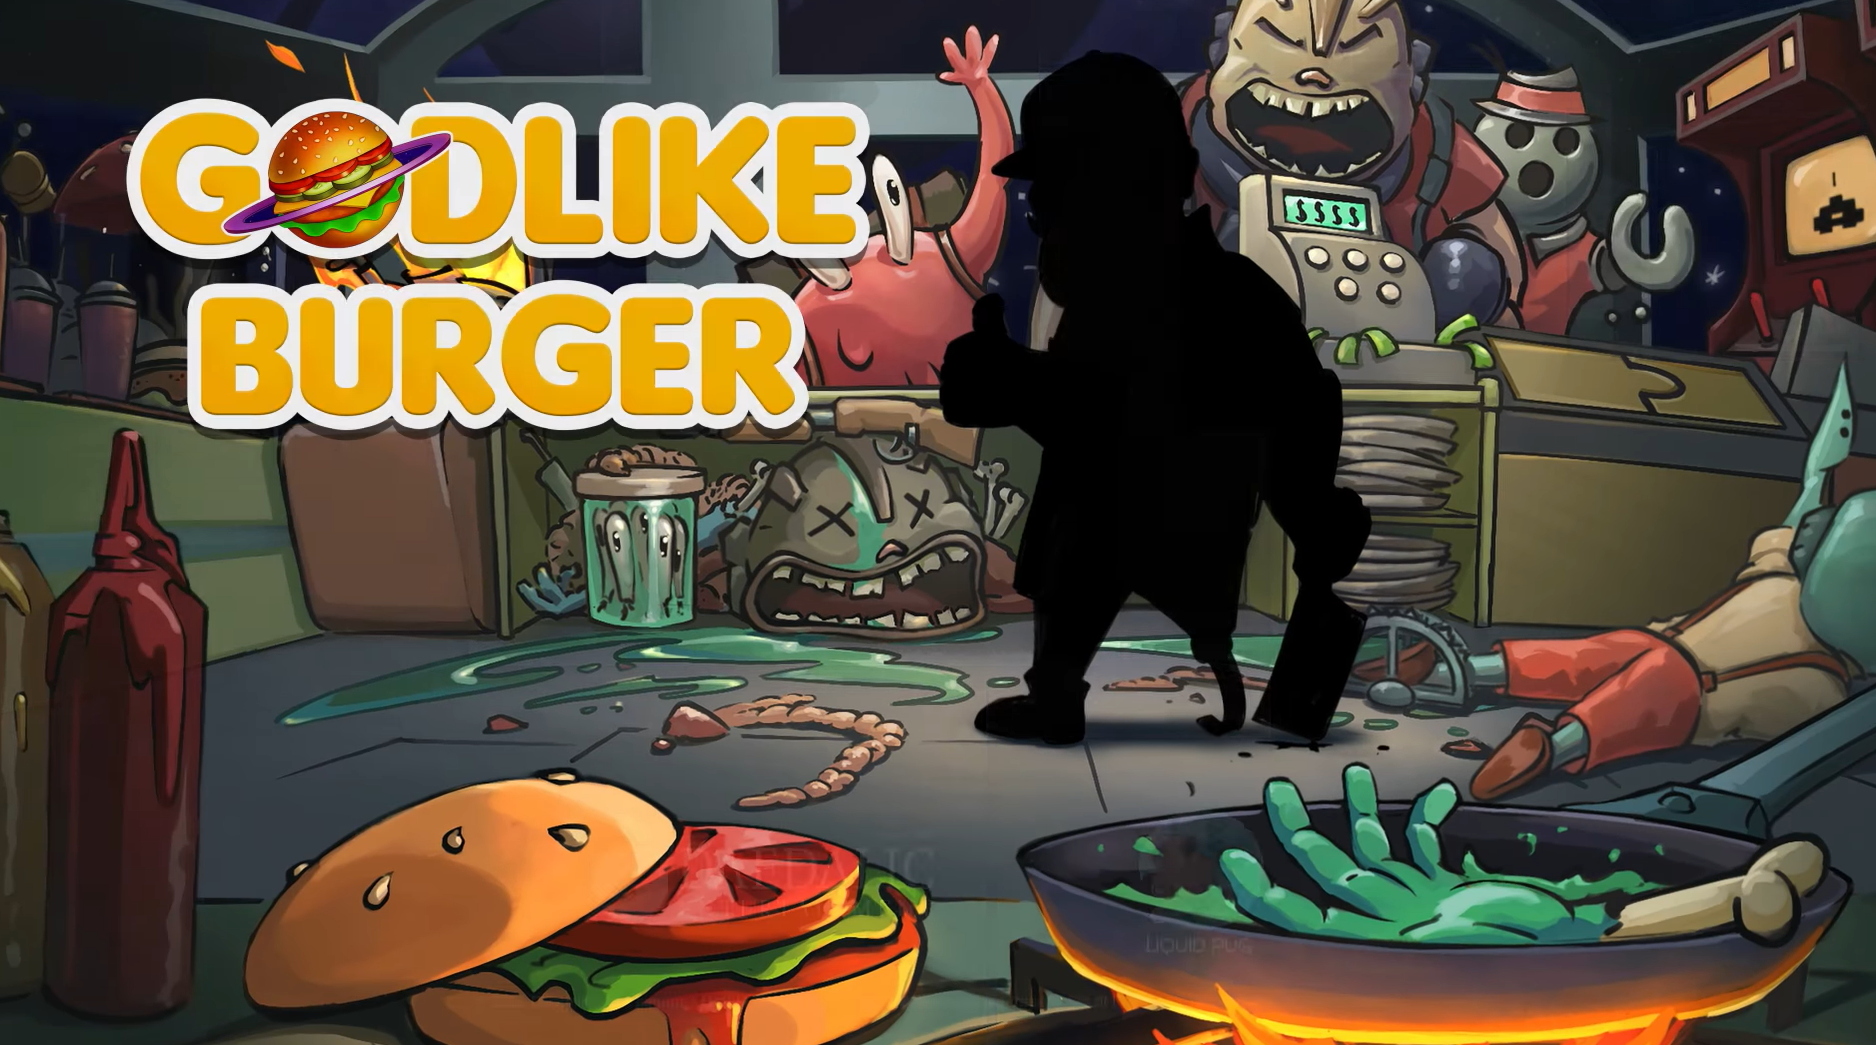 download the last version for apple Godlike Burger